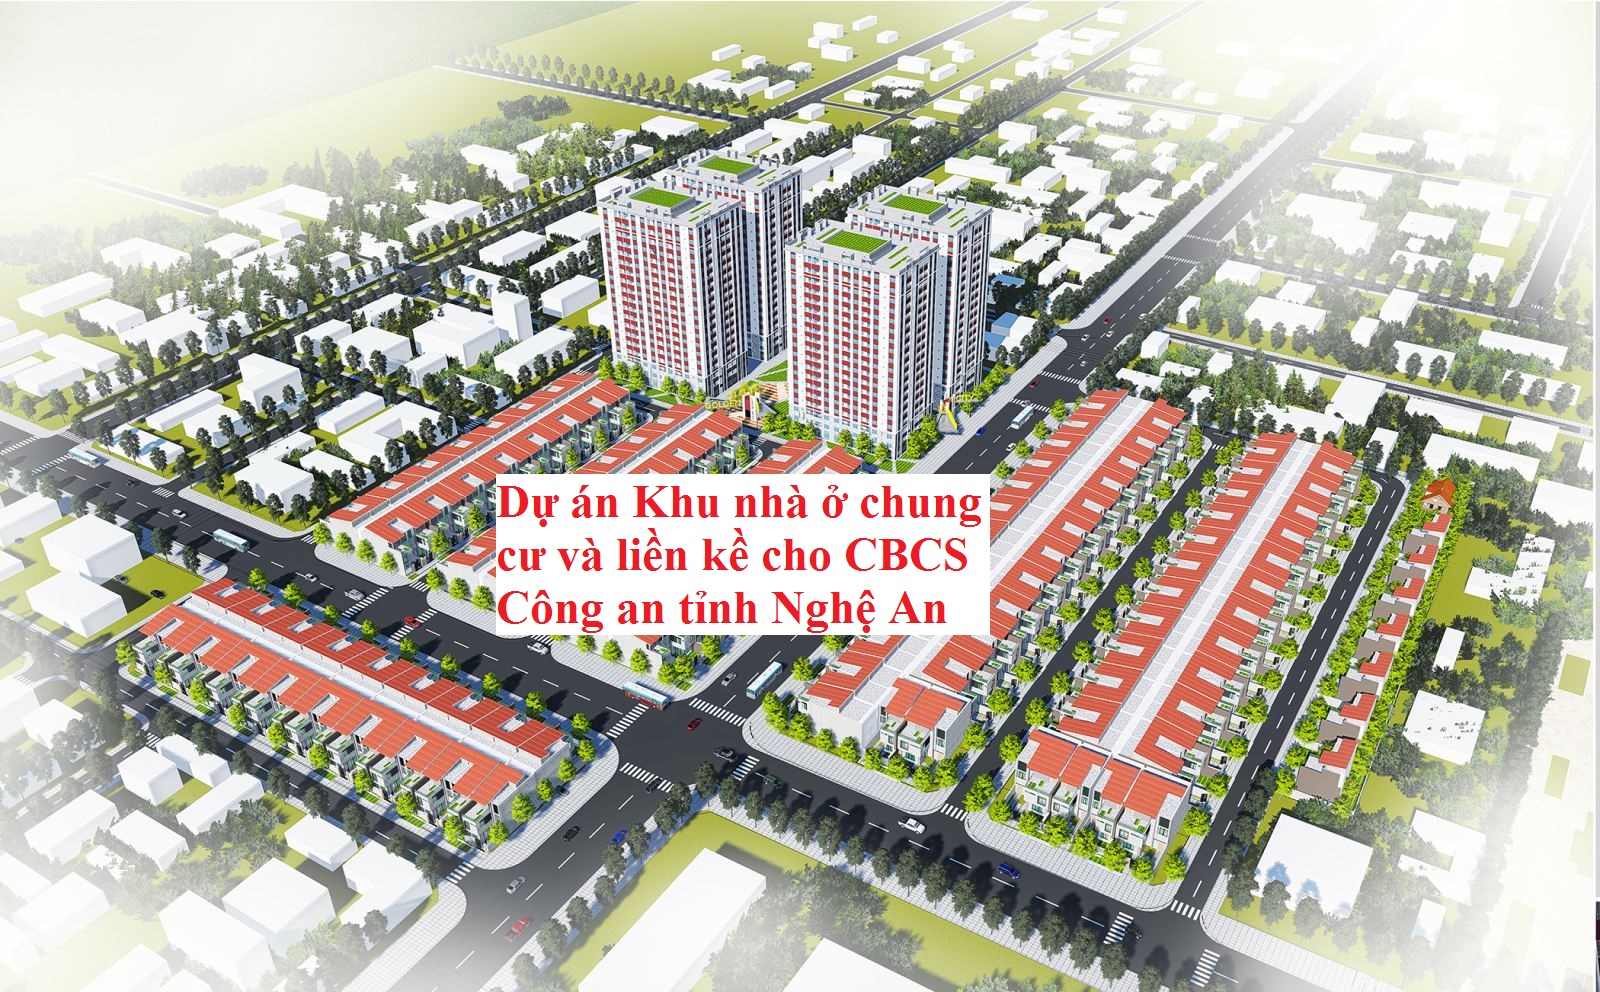 Dự án Khu nhà ở chung cư và liền kề cho CBCS Công an tỉnh Nghệ An tại xã Nghi Phú, thành phố Vinh